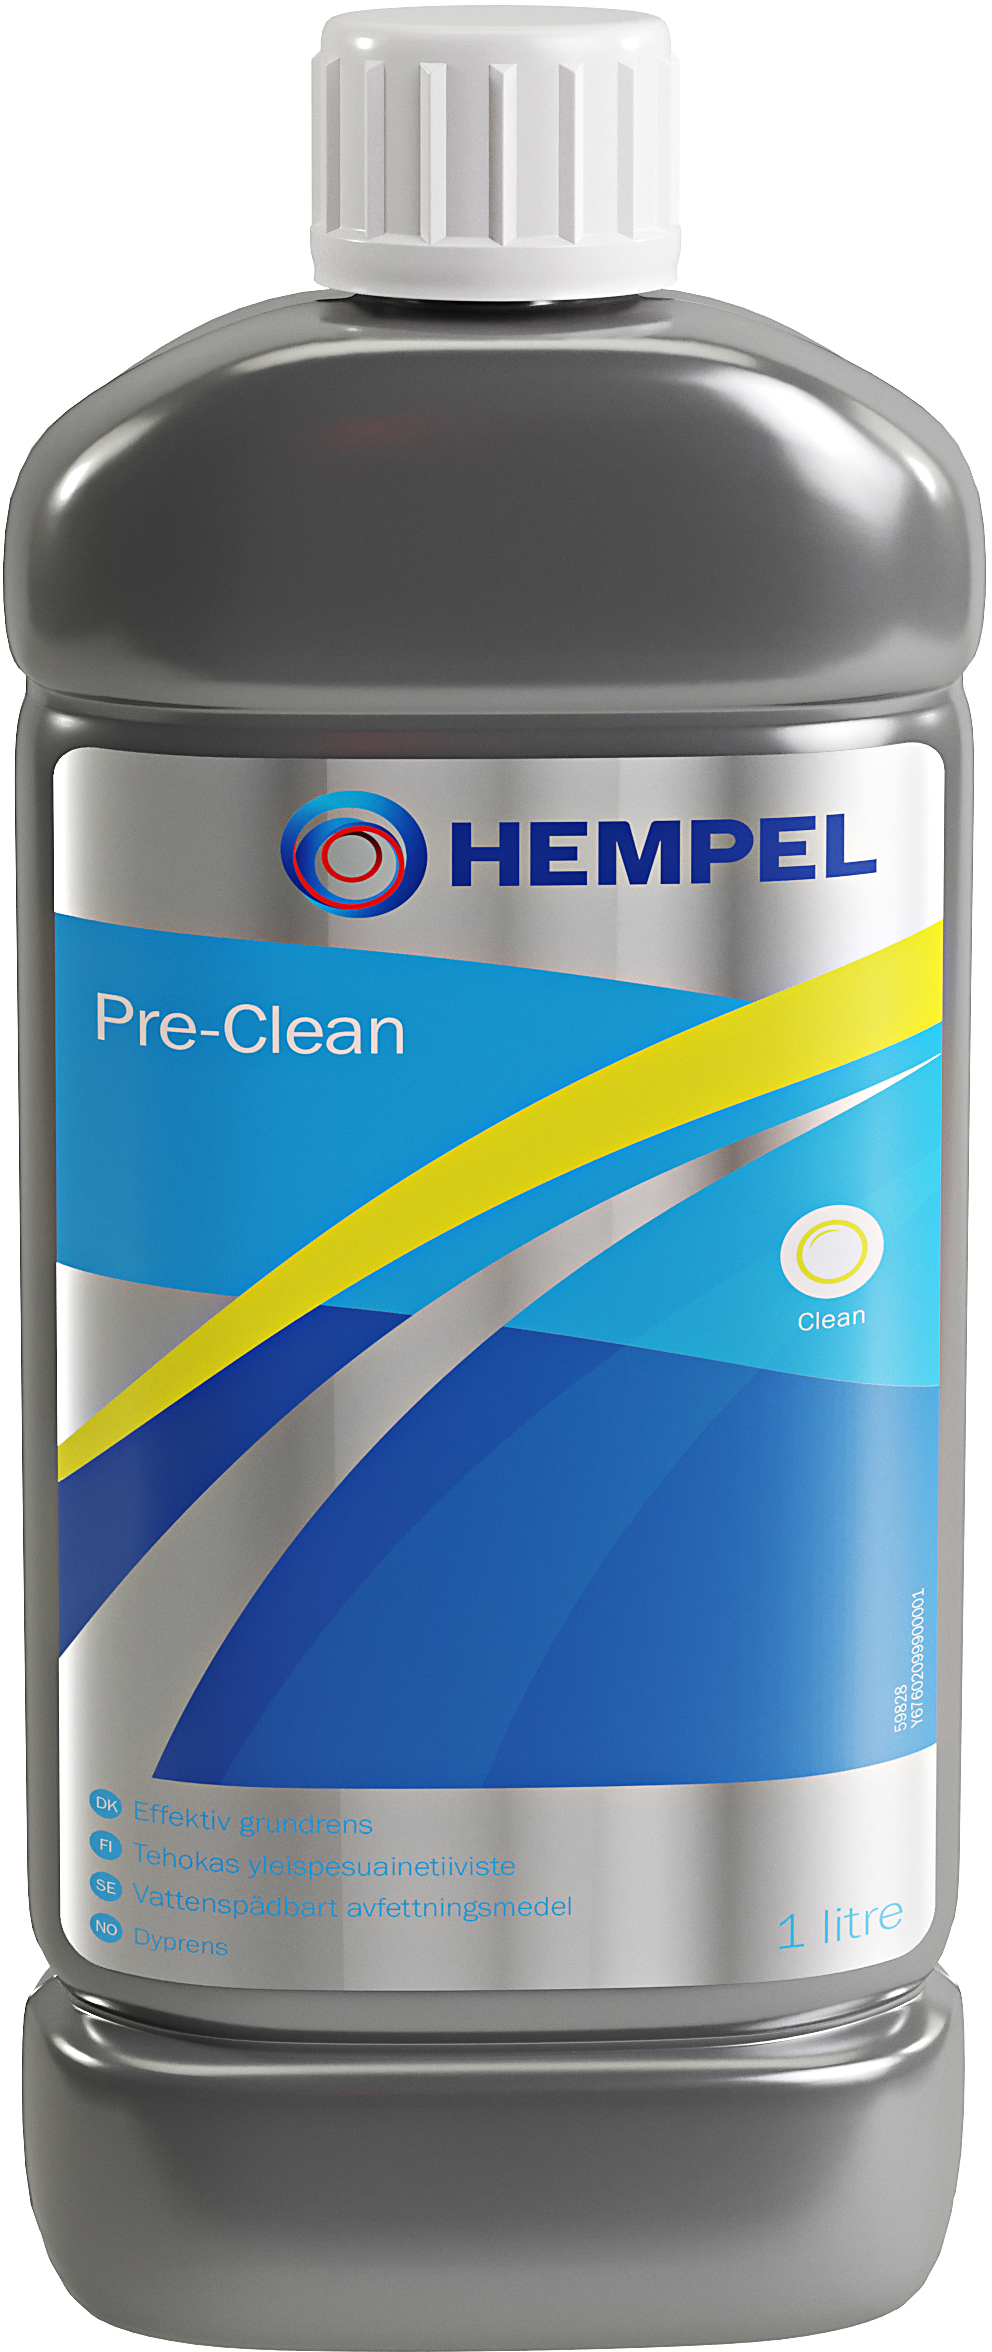 Hempel Pre-Clean 1 l